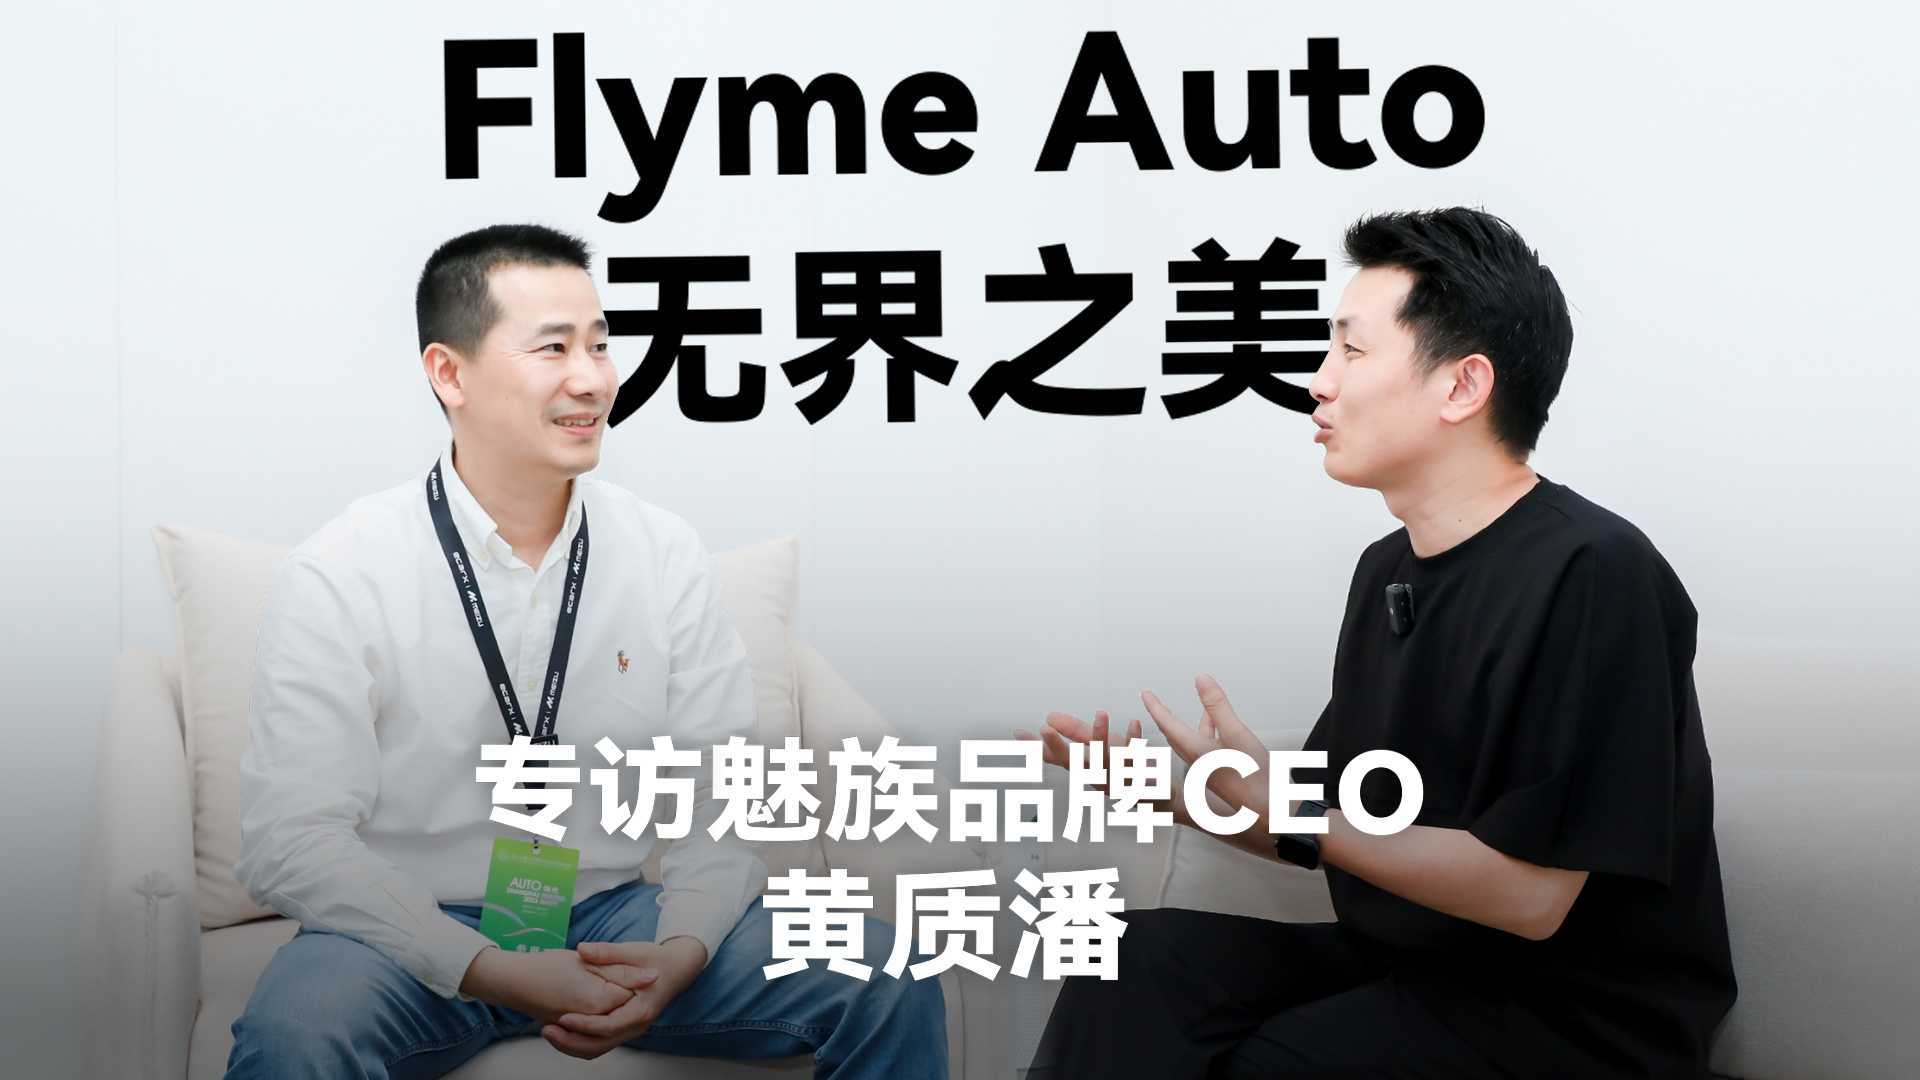 降维打击的，为什么是Flyme Auto？